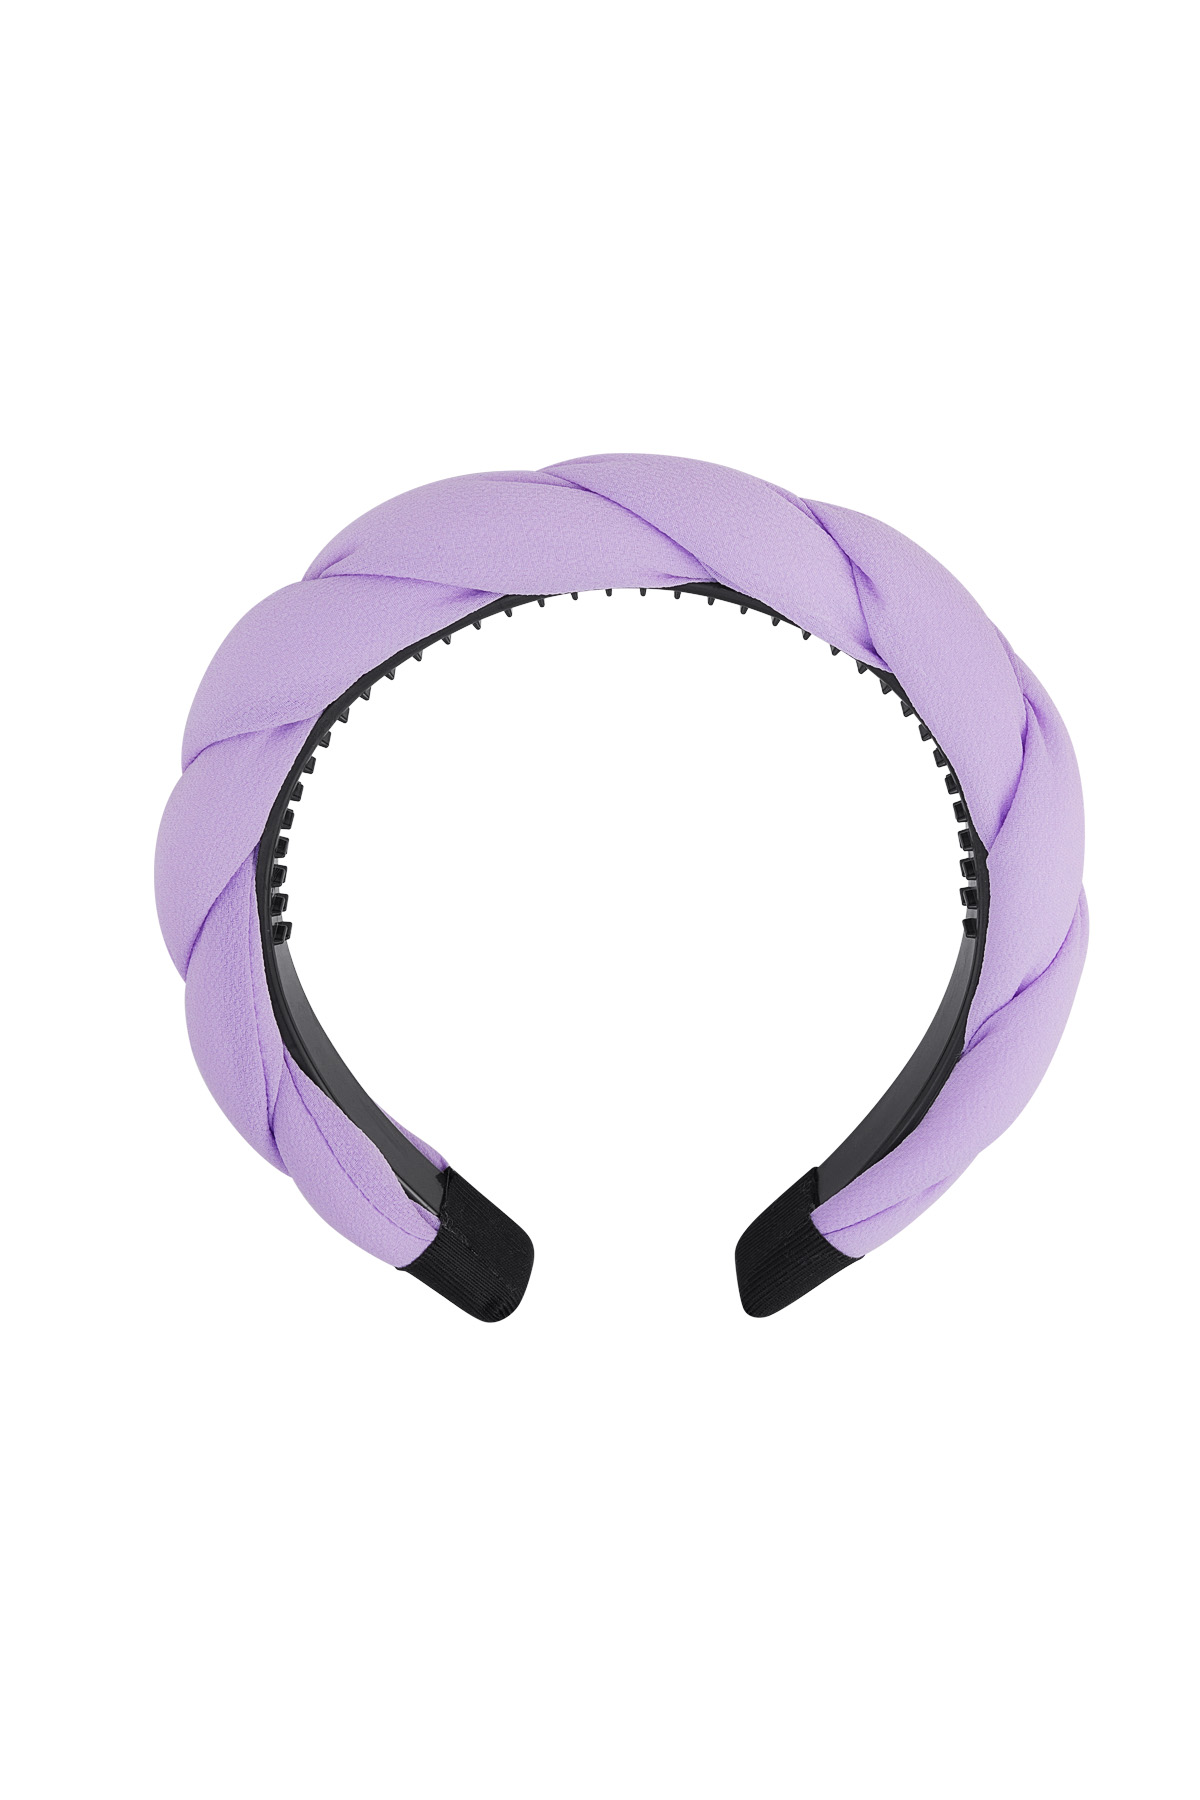 Dettaglio treccia fascia per capelli - lilla Purple Plastic 